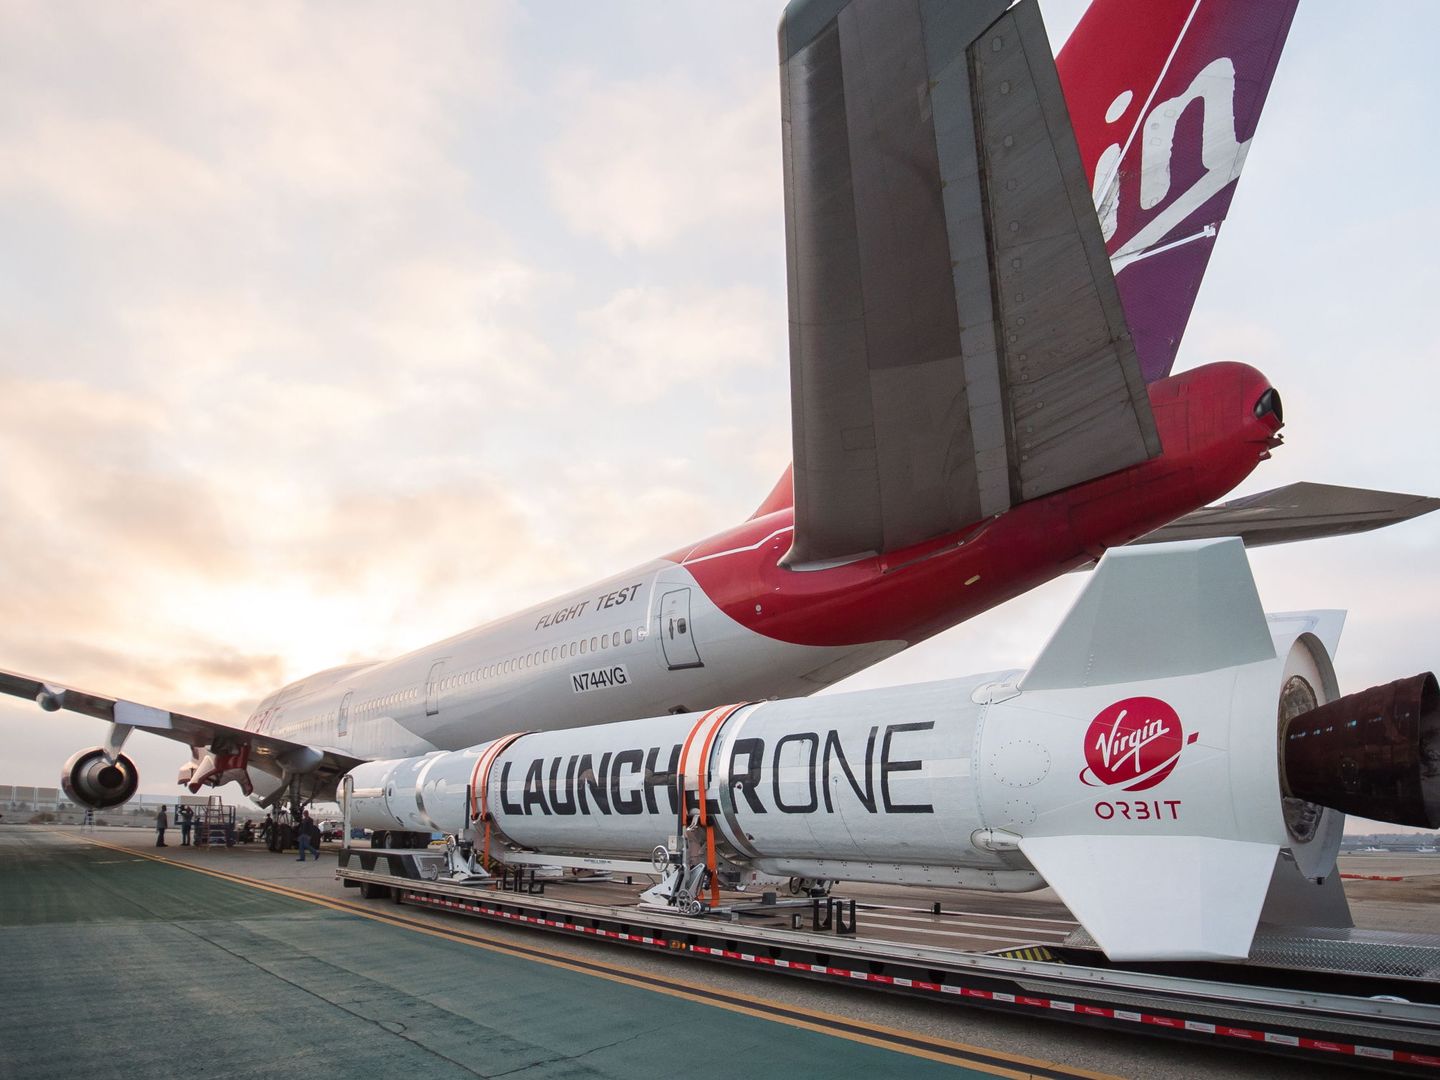 El LauncherOne de Virgin Orbit, en tierra. (Reuters)